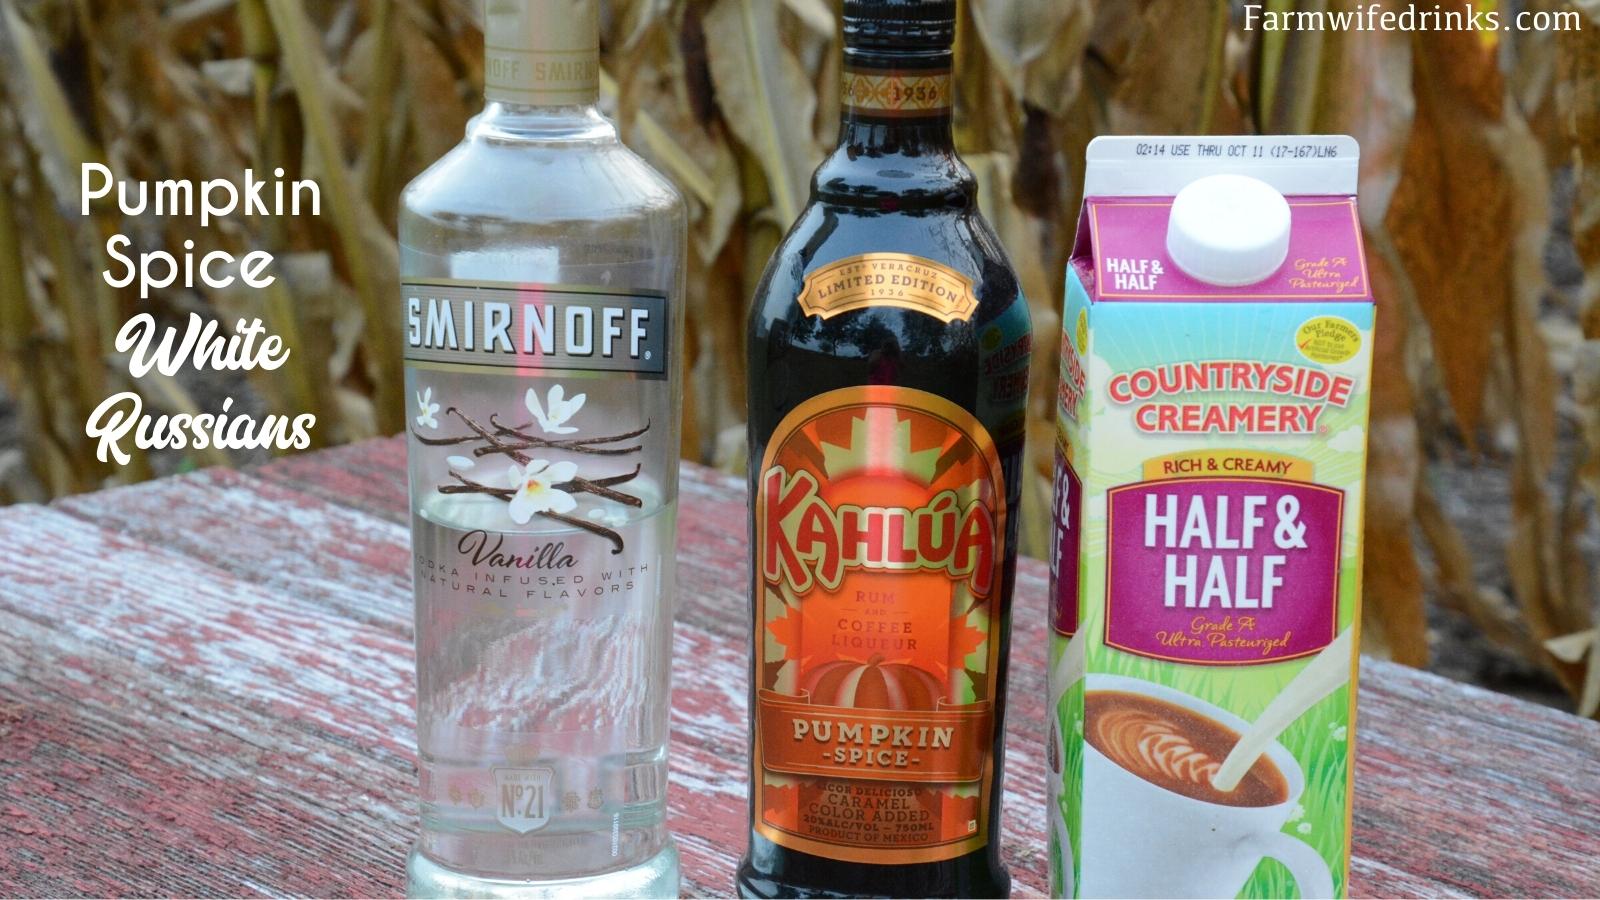 Pumpkin Spice White Russians ingredients - Kahlua, vanilla vodka, and cream